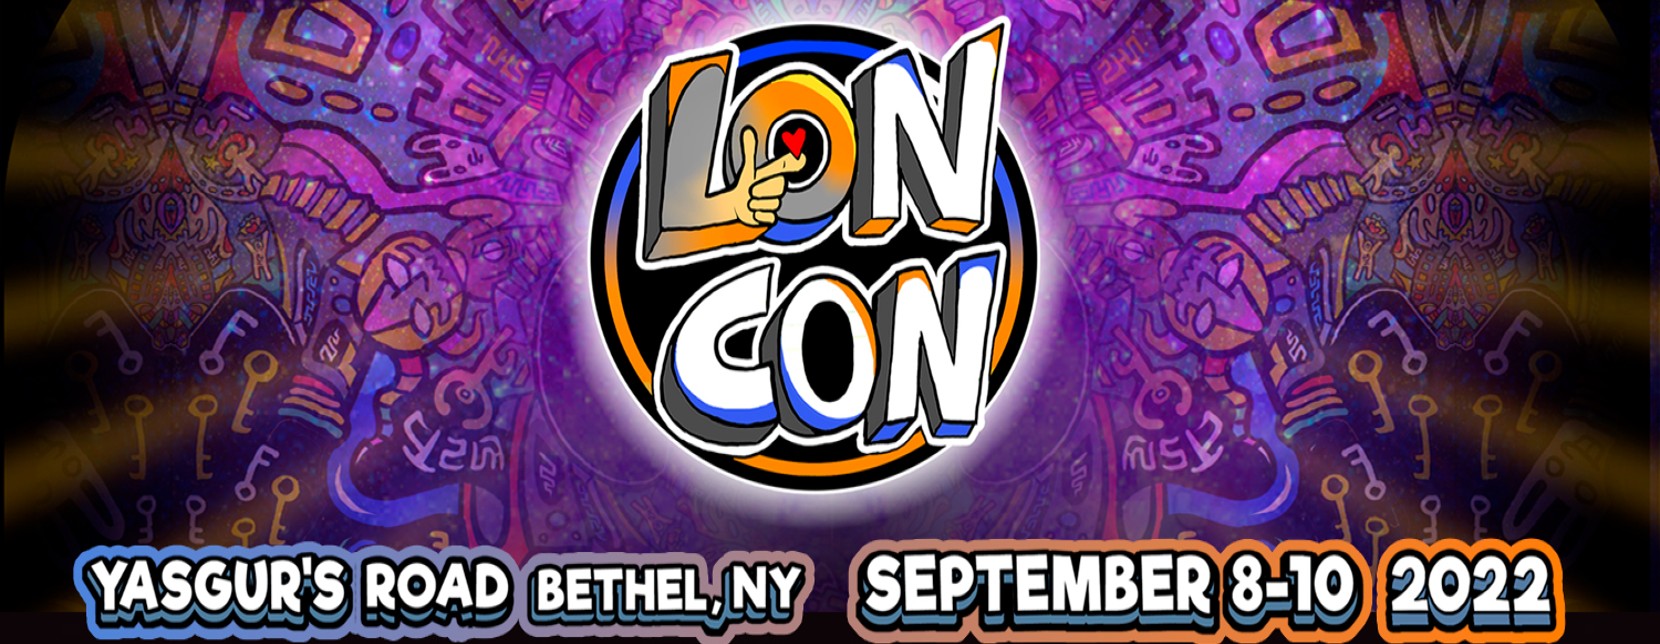 LonCon BS Website